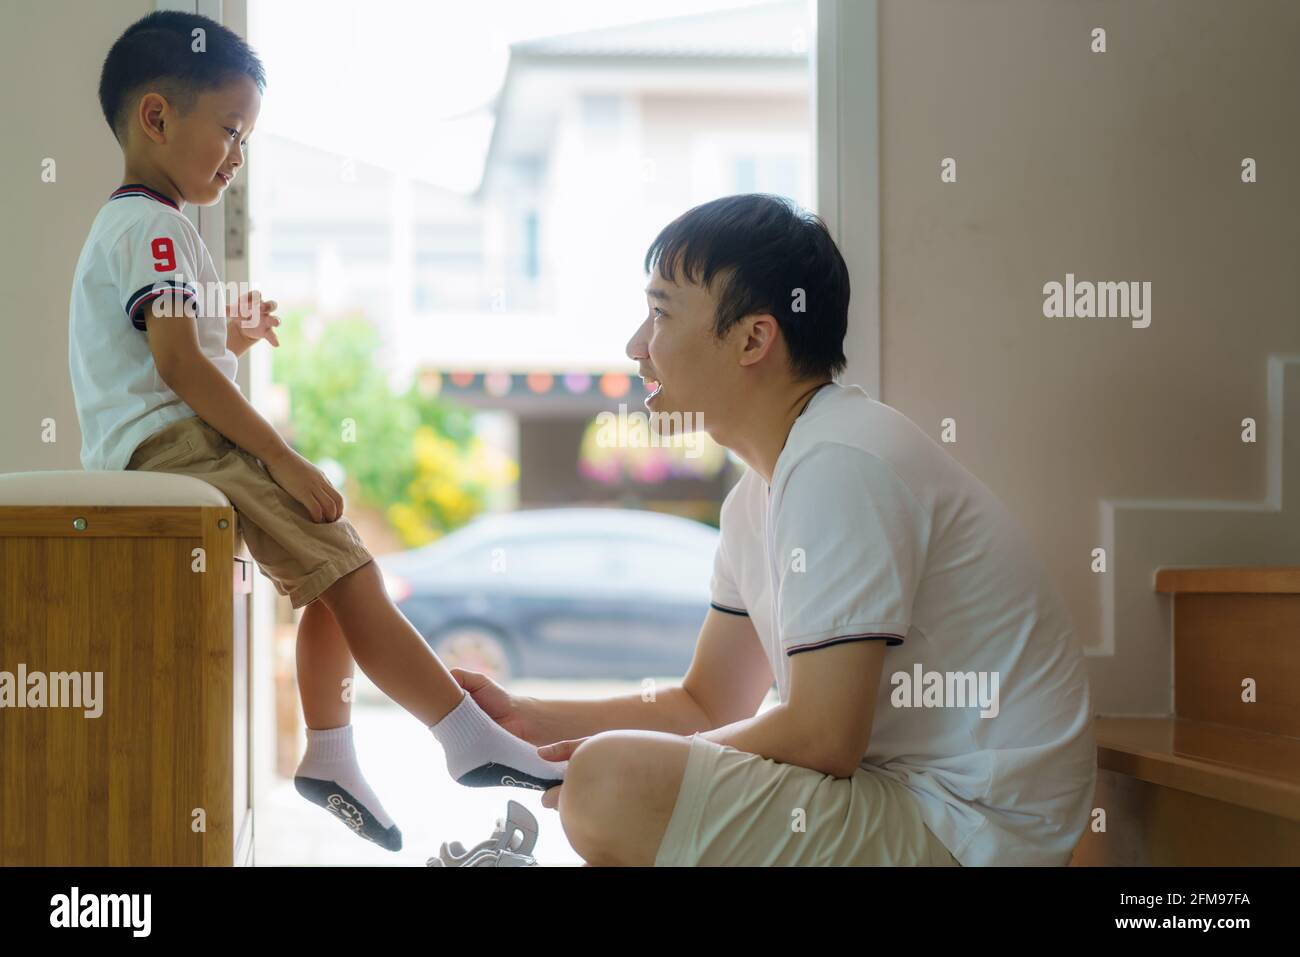 Der asiatische Vater trägt Socken für seinen Sohn, Väter interagieren den ganzen Tag über mit ihren Kindern. Stockfoto